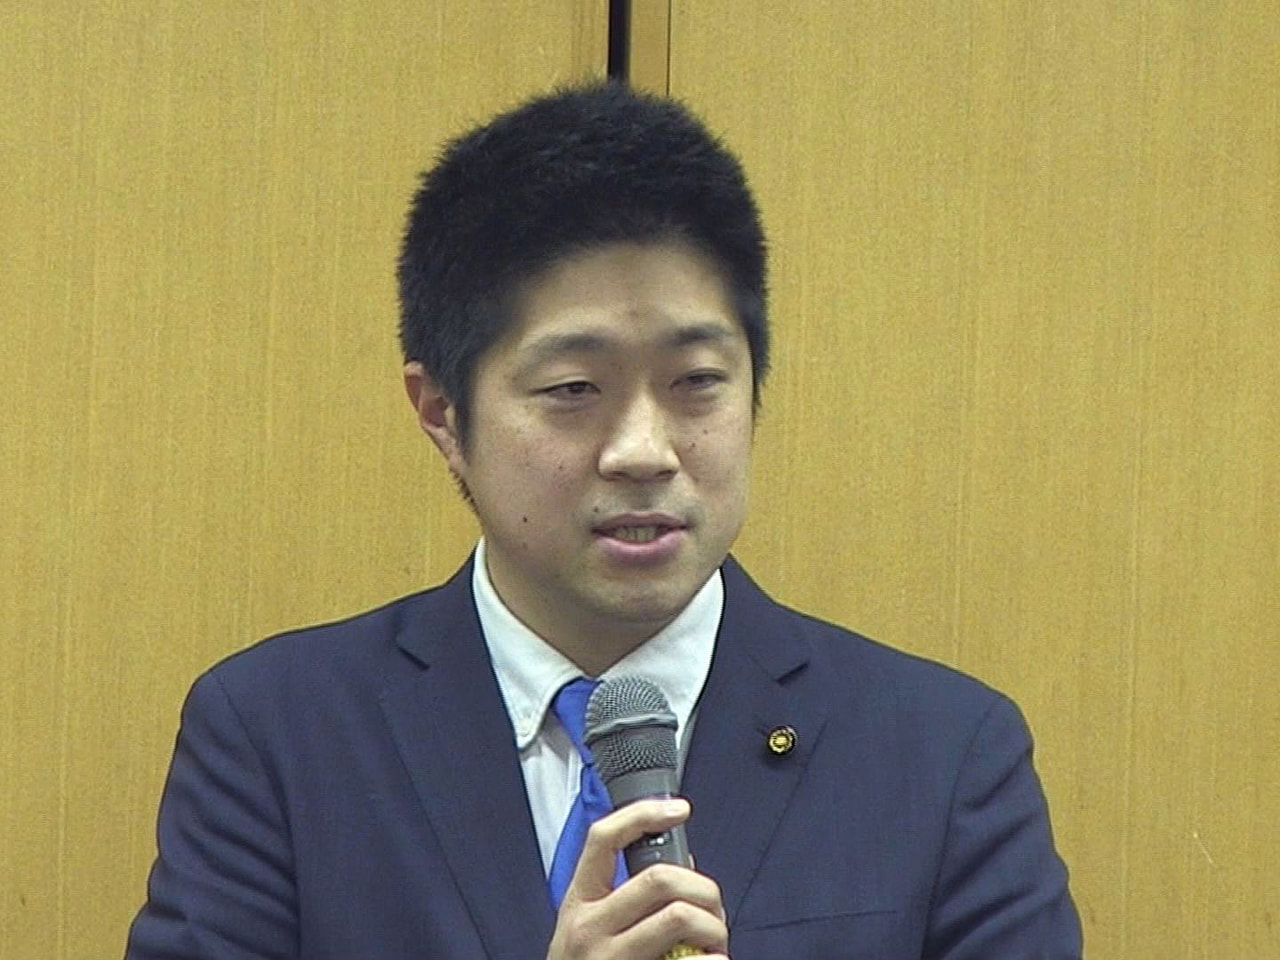 ４月に行われる統一地方選の多治見市長選挙で、立候補を表明していた市議会議員の吉田...